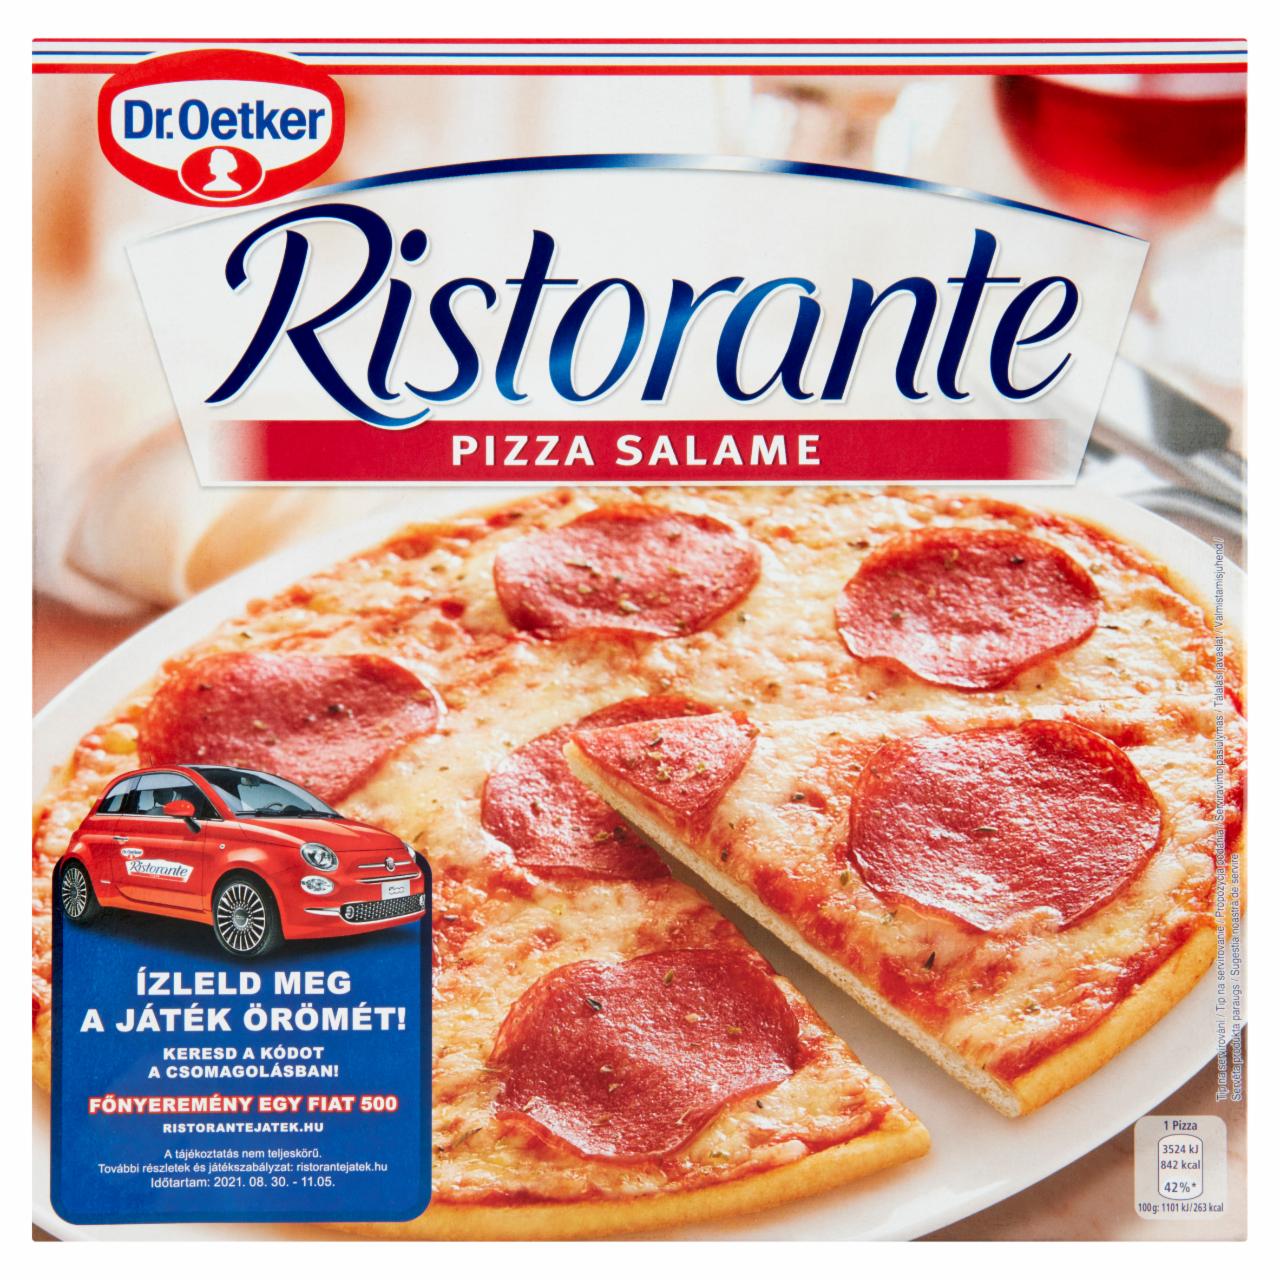 Képek - Dr. Oetker Ristorante Pizza Salame gyorsfagyasztott pizza sajttal és szalámival 320 g